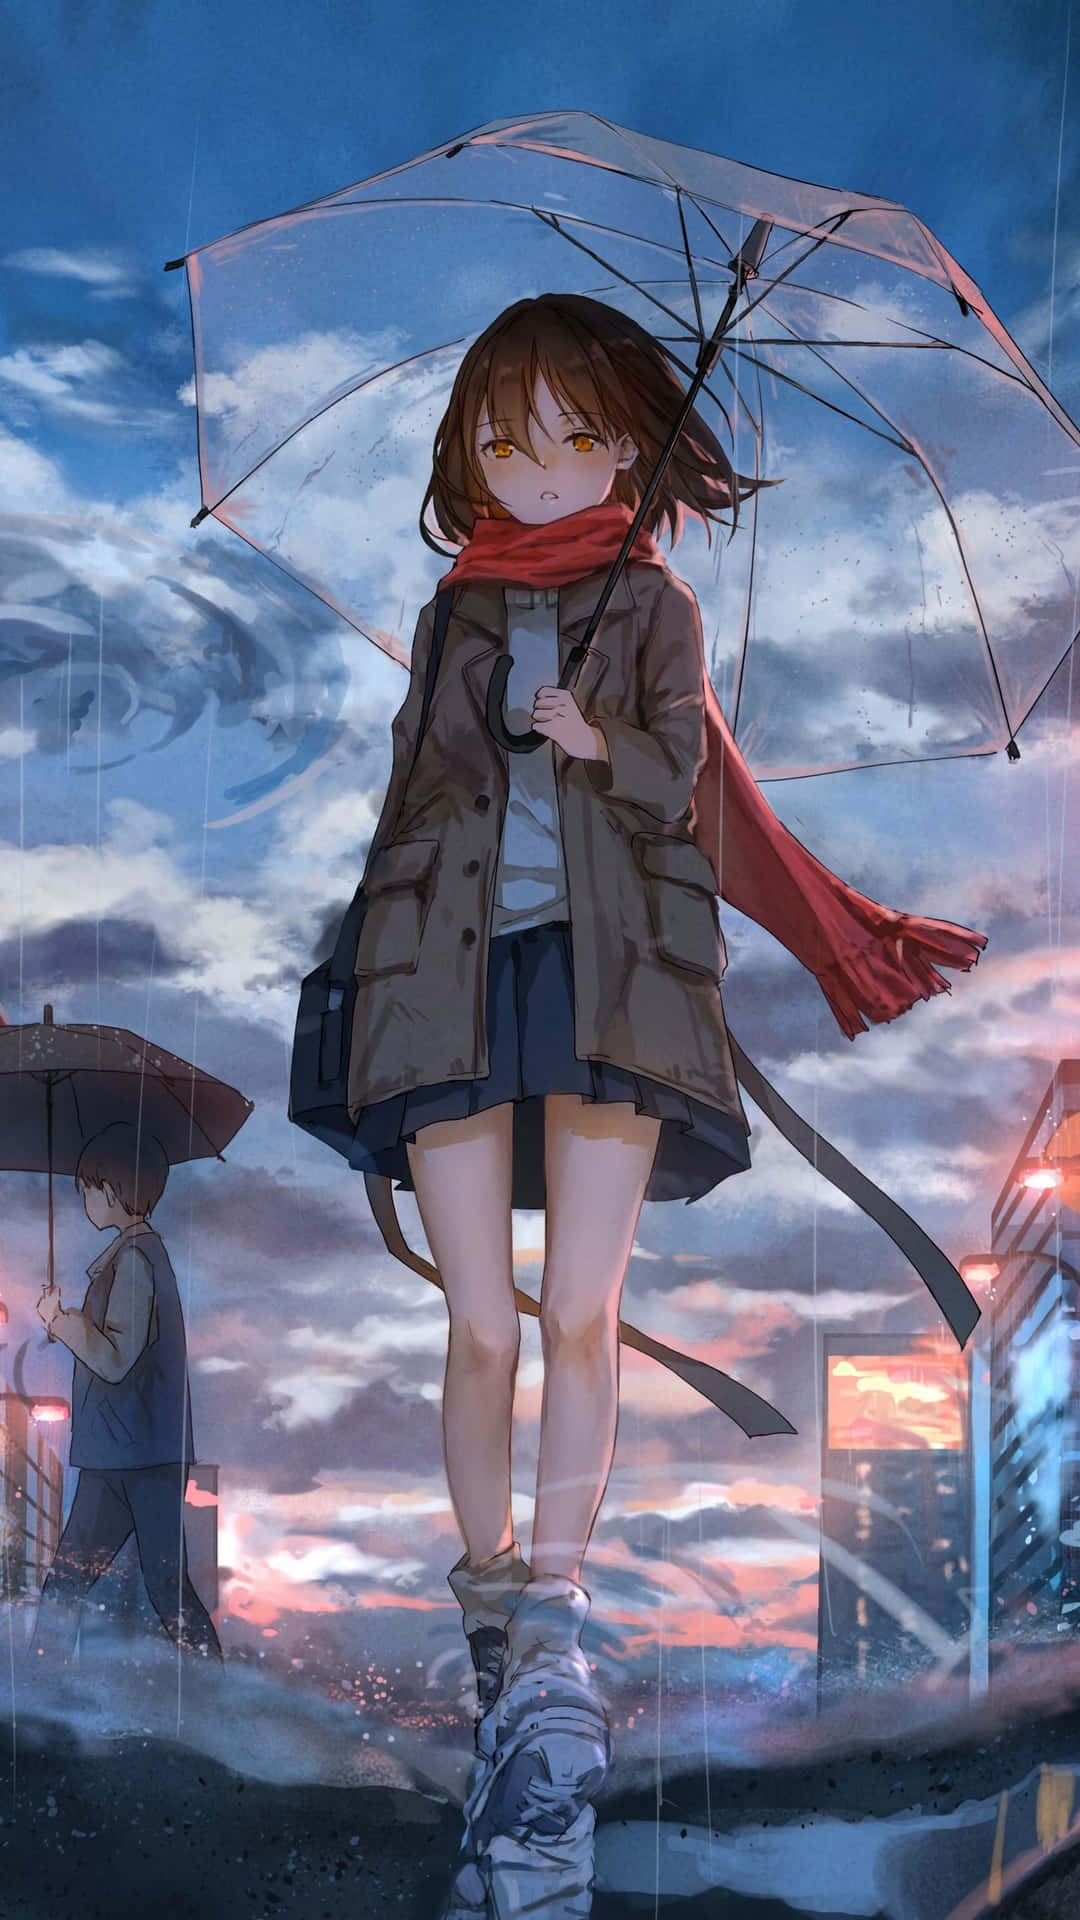 Anime Girl With Umbrella Dusk Scene Wallpaper